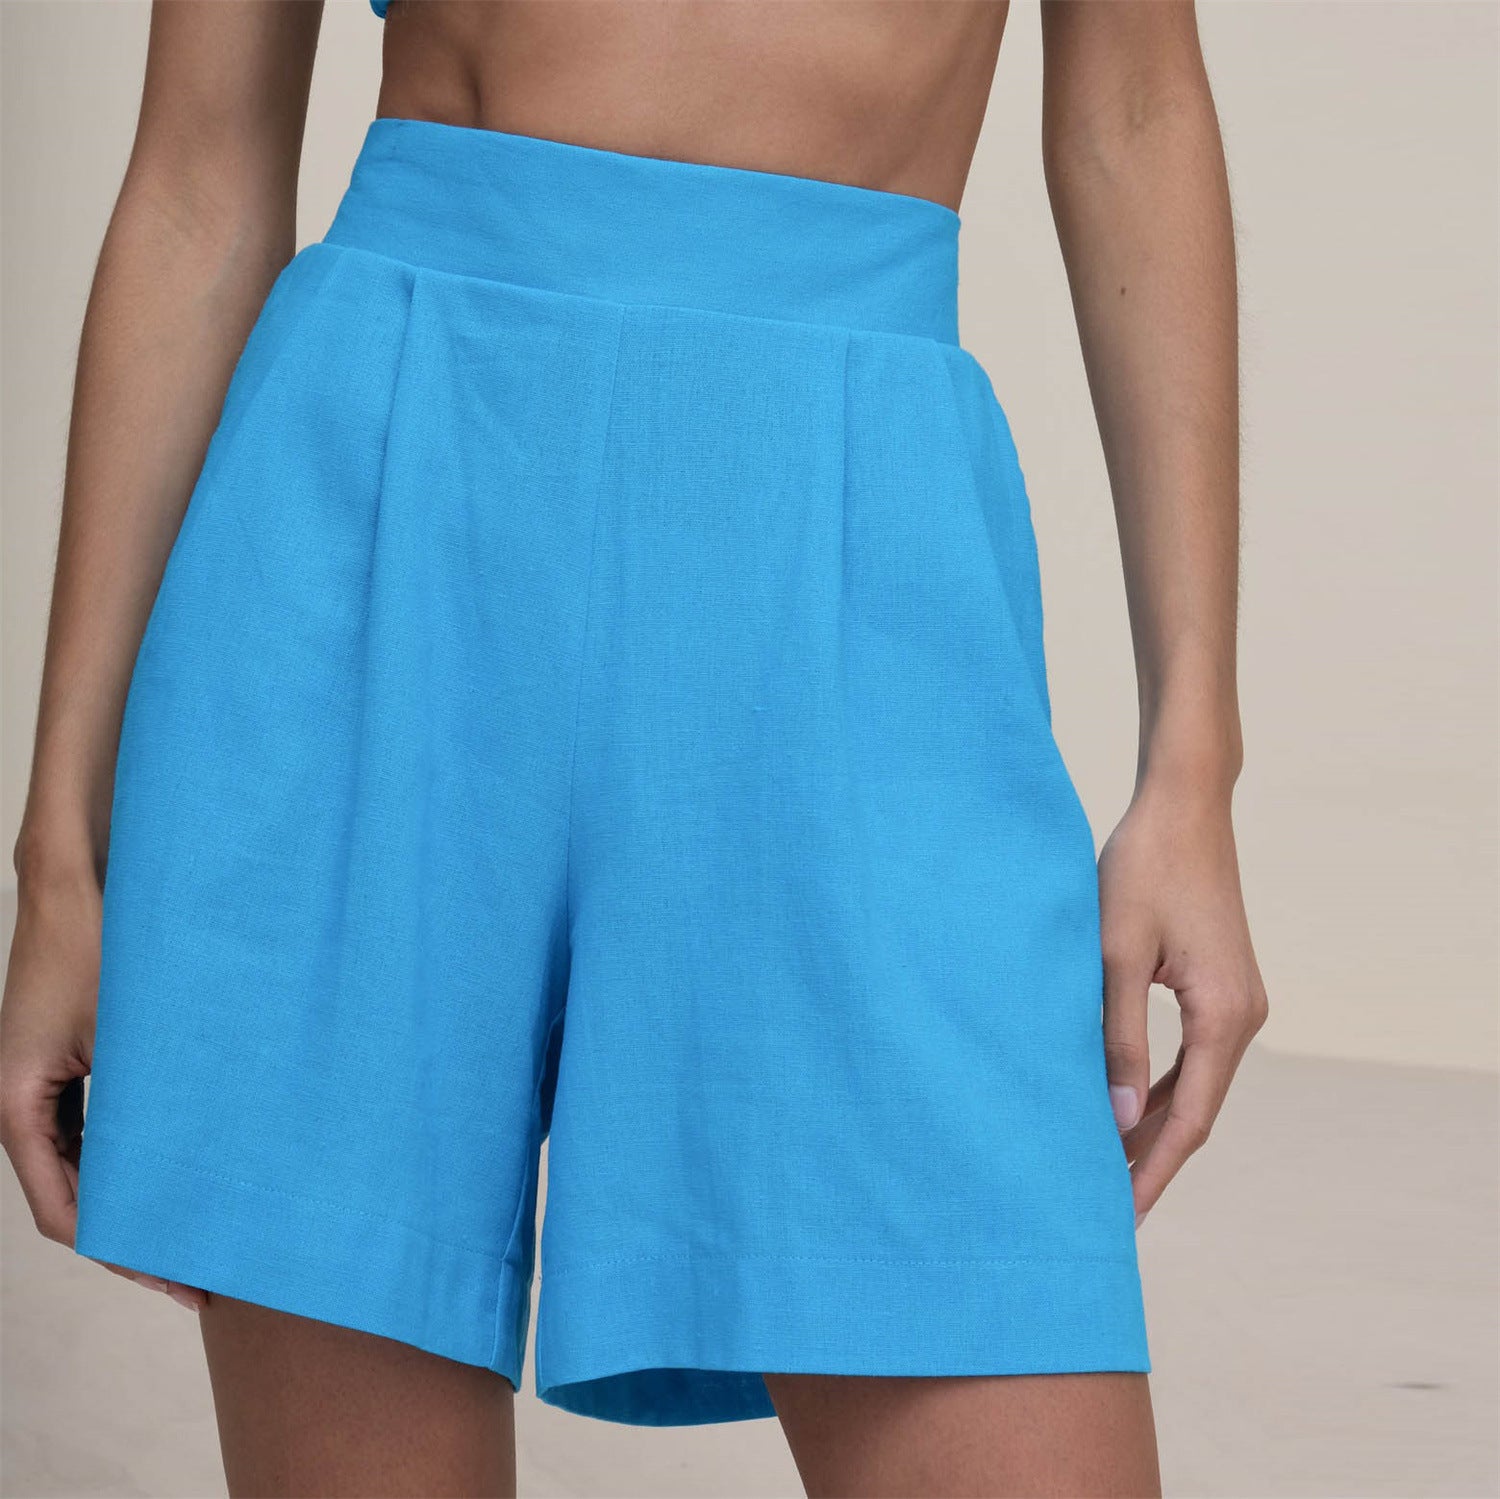 NTG Fad SUIT blue shorts / S cotton linen vest shirt four piece set